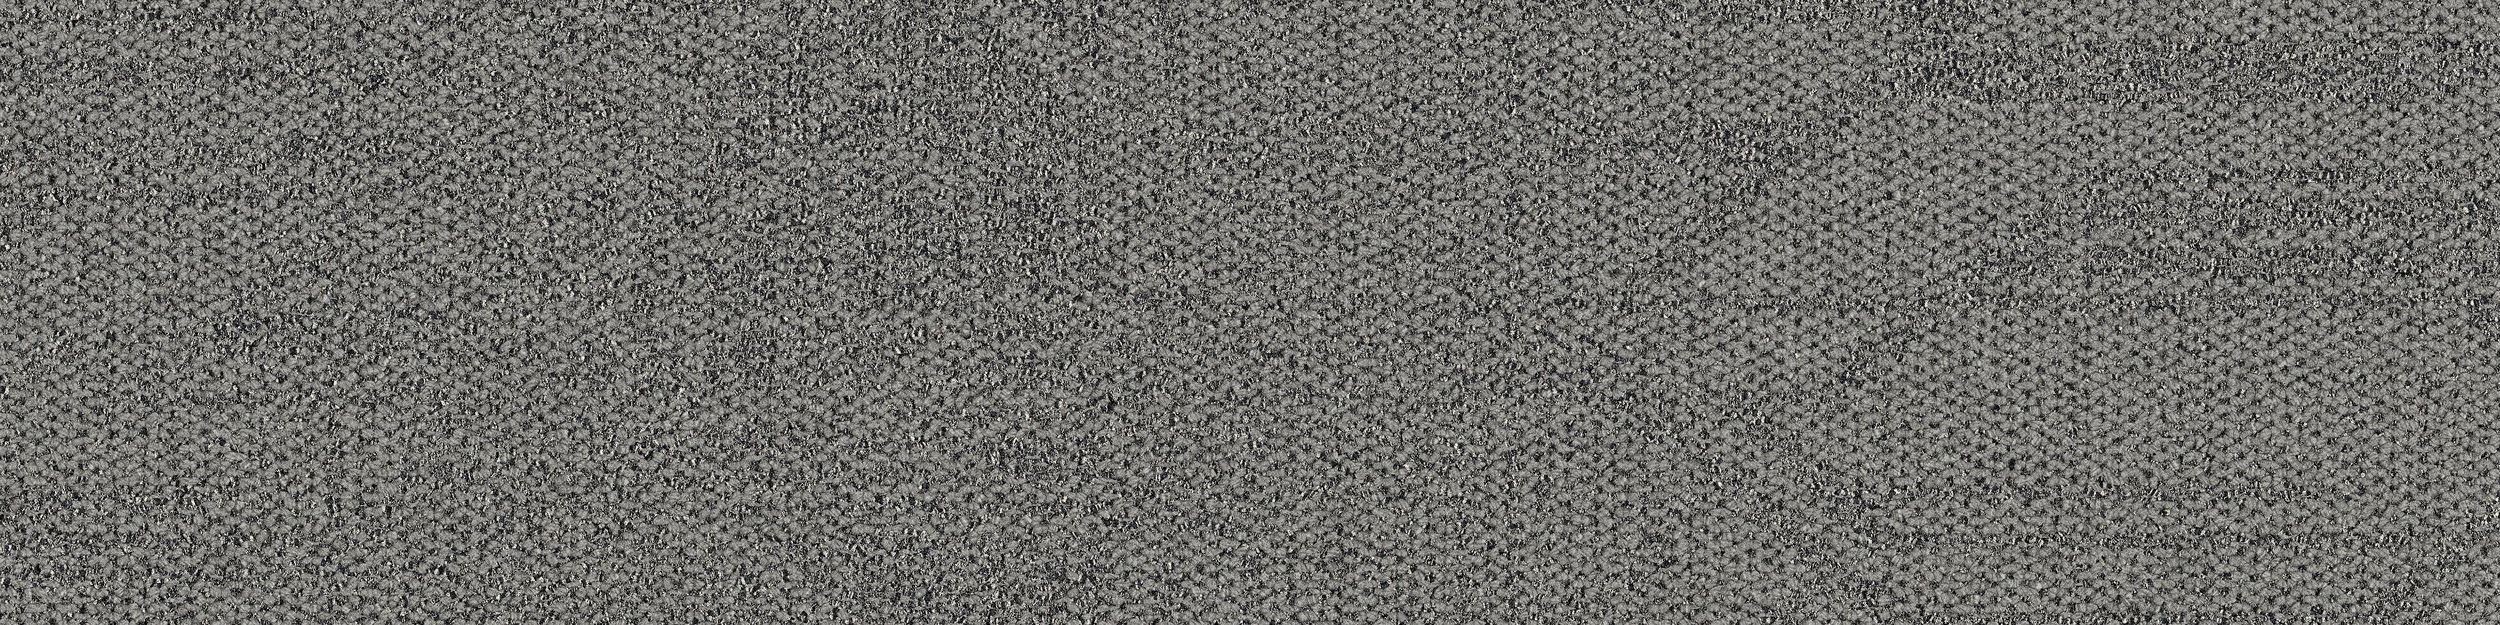 Open Air 411 Carpet Tile In Flannel imagen número 2